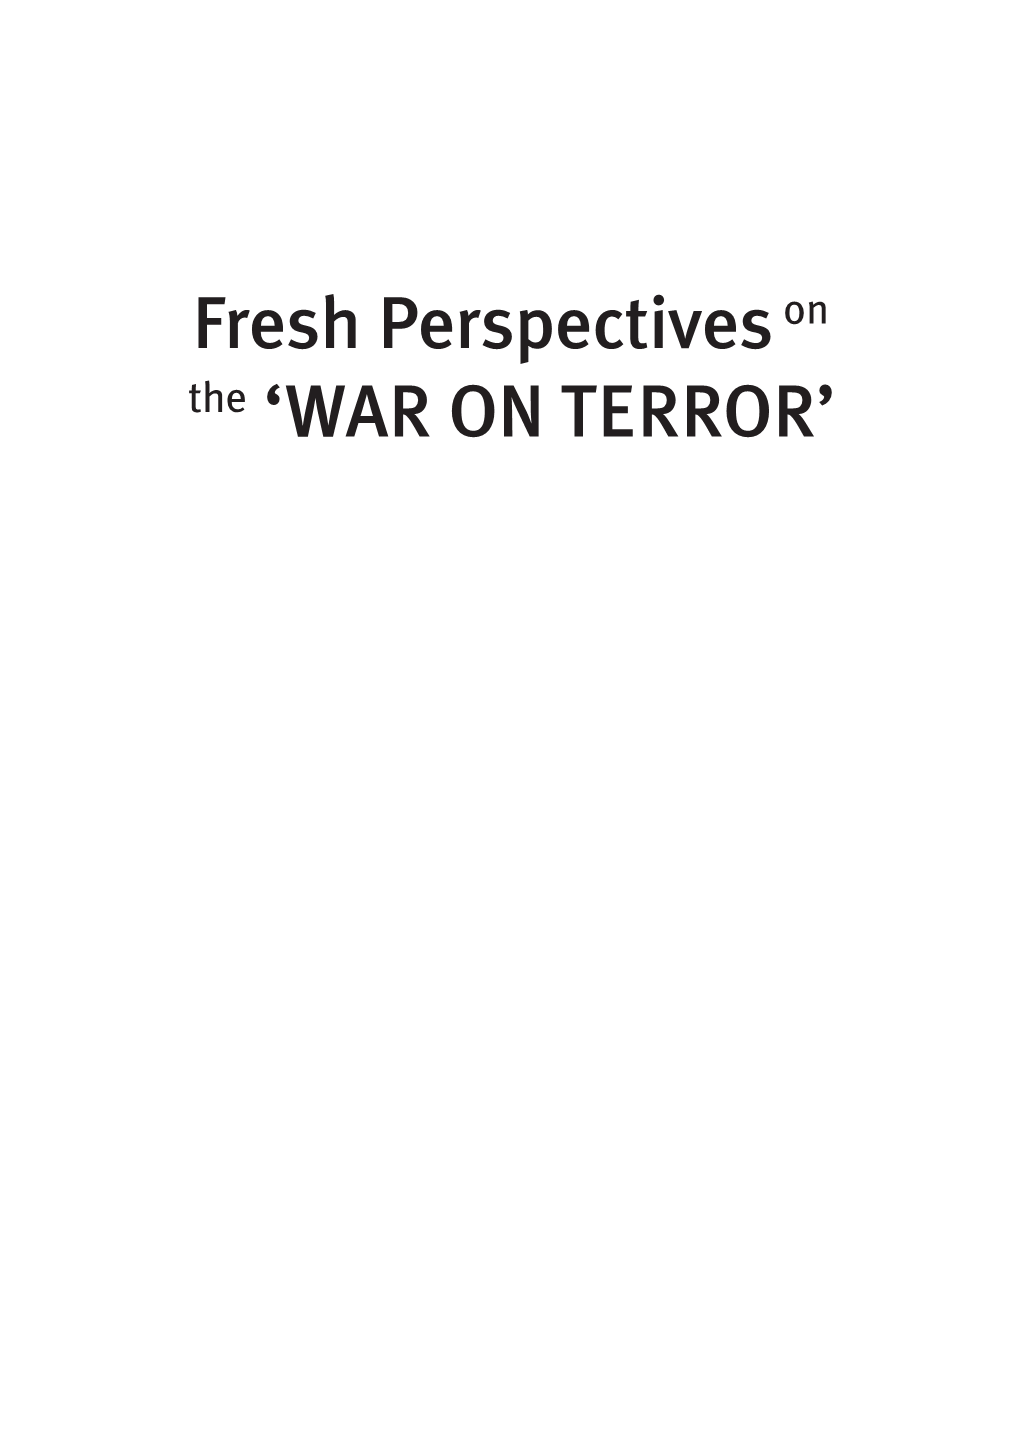 War on Terror’